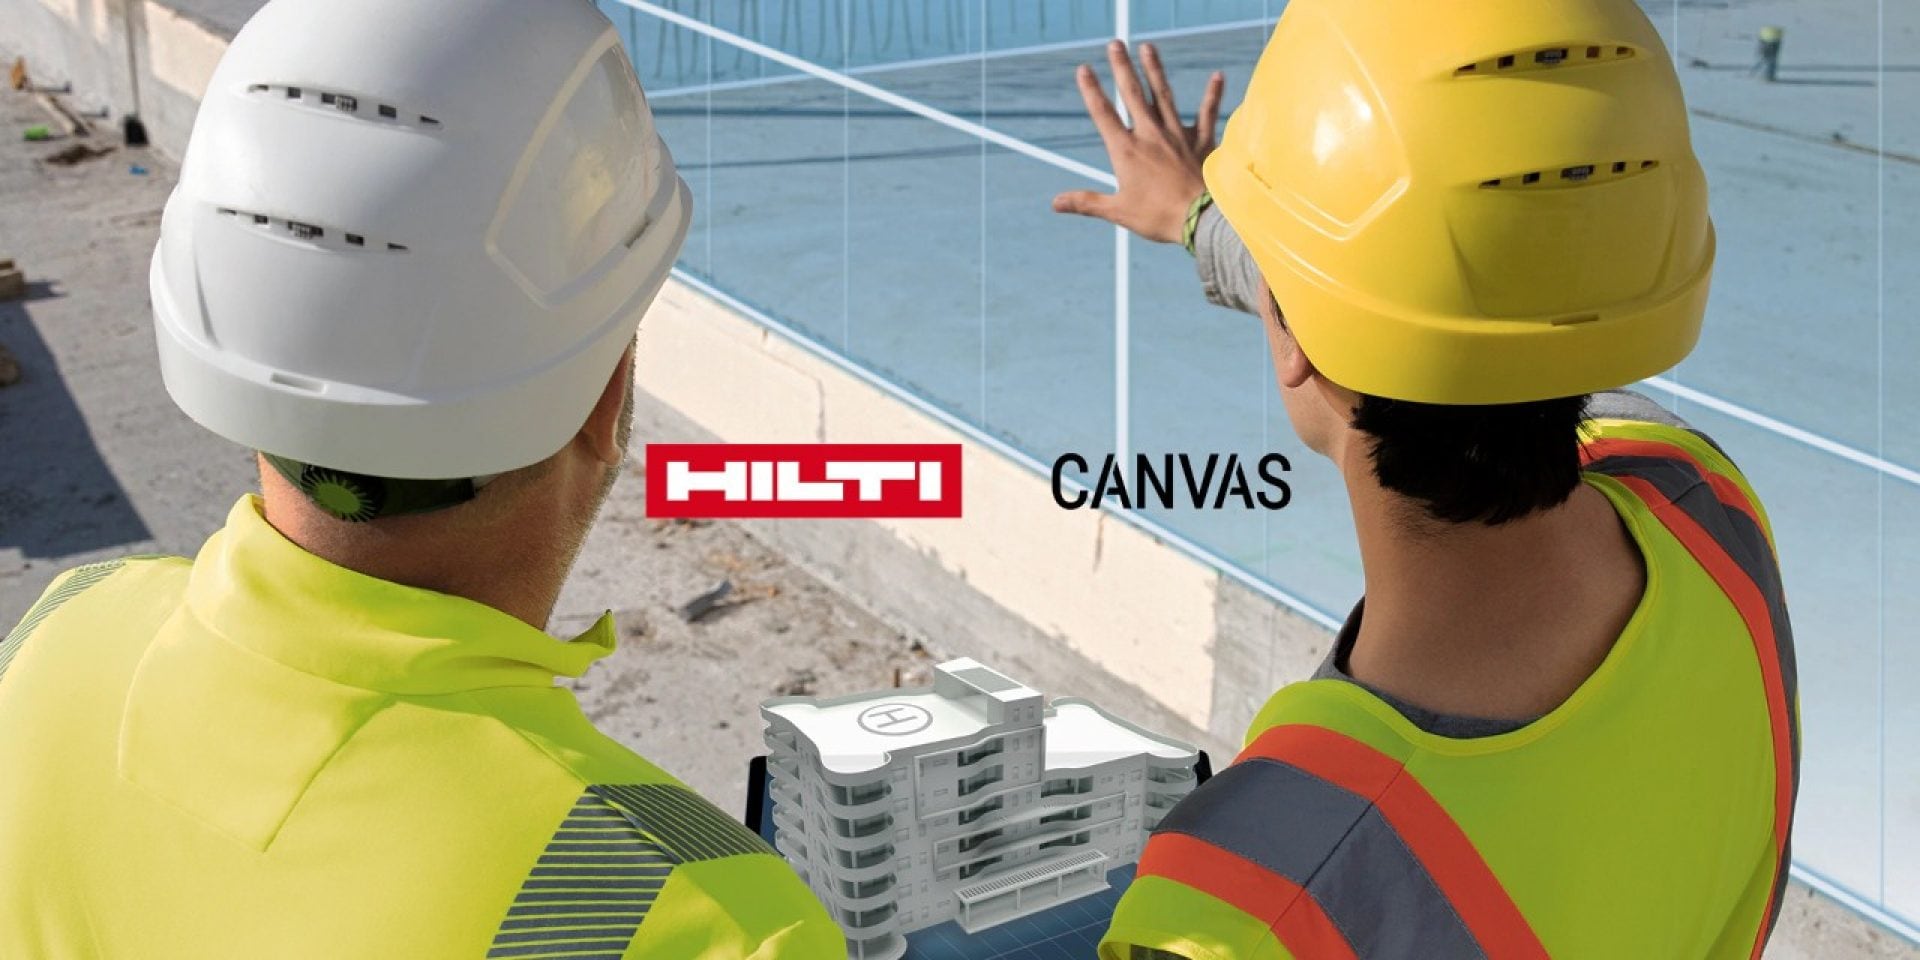 Schaan (FL), 13. März 2023 – Hilti geht mit dem Baurobotik-Unternehmen Canvas (USA) eine strategische Partnerschaft ein. Canvas hat eine Trockenbau- Roboterlösung entwickelt, die neue Wege des Bauens ermöglich soll.